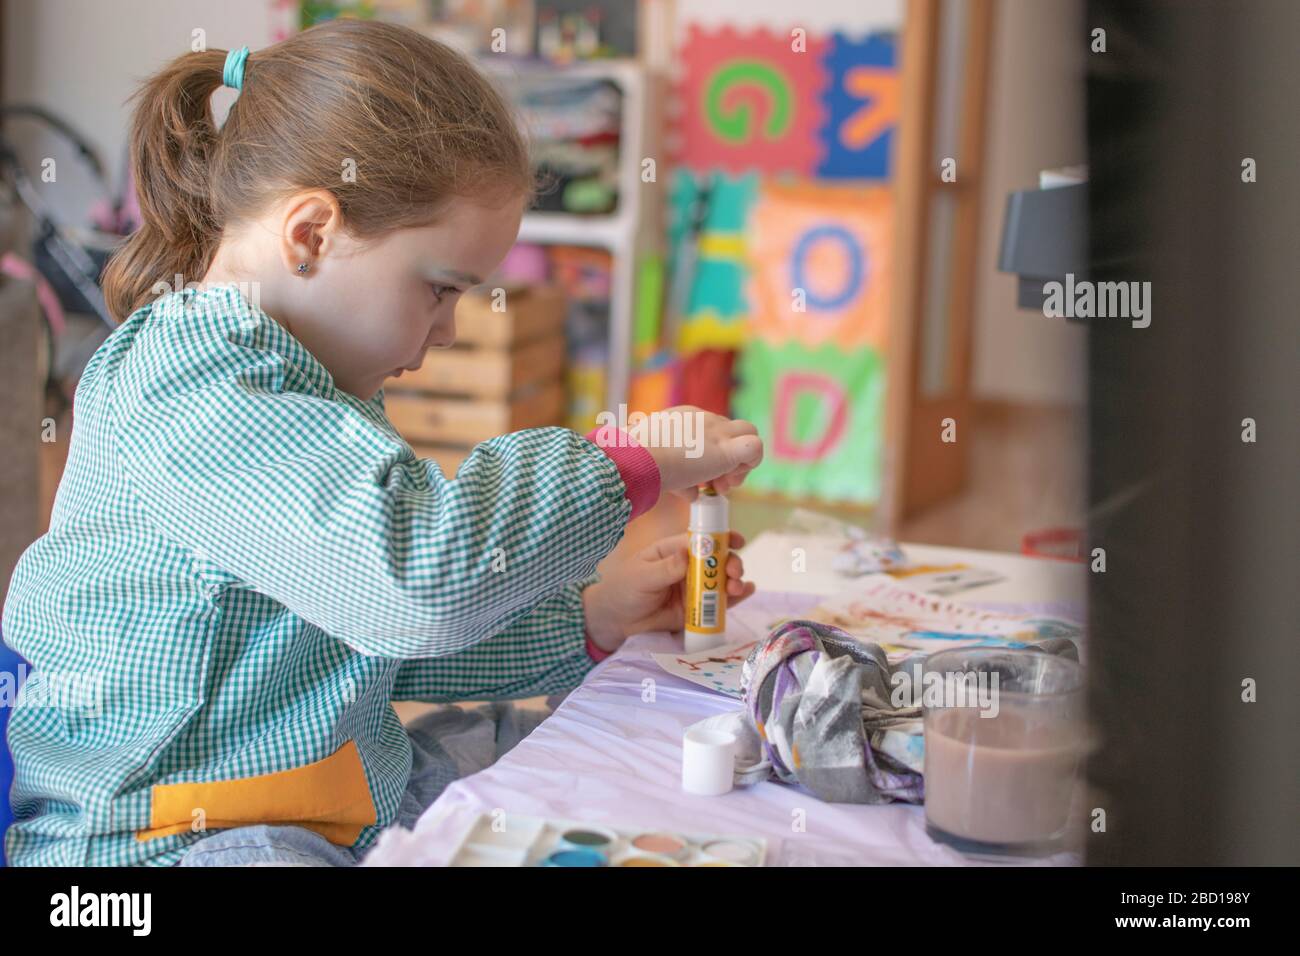 Petite peinture caucasienne d'enfant et faire quelques devoirs à auto-isolation. Concept de quarantaine et bourse d'études à domicile. Banque D'Images